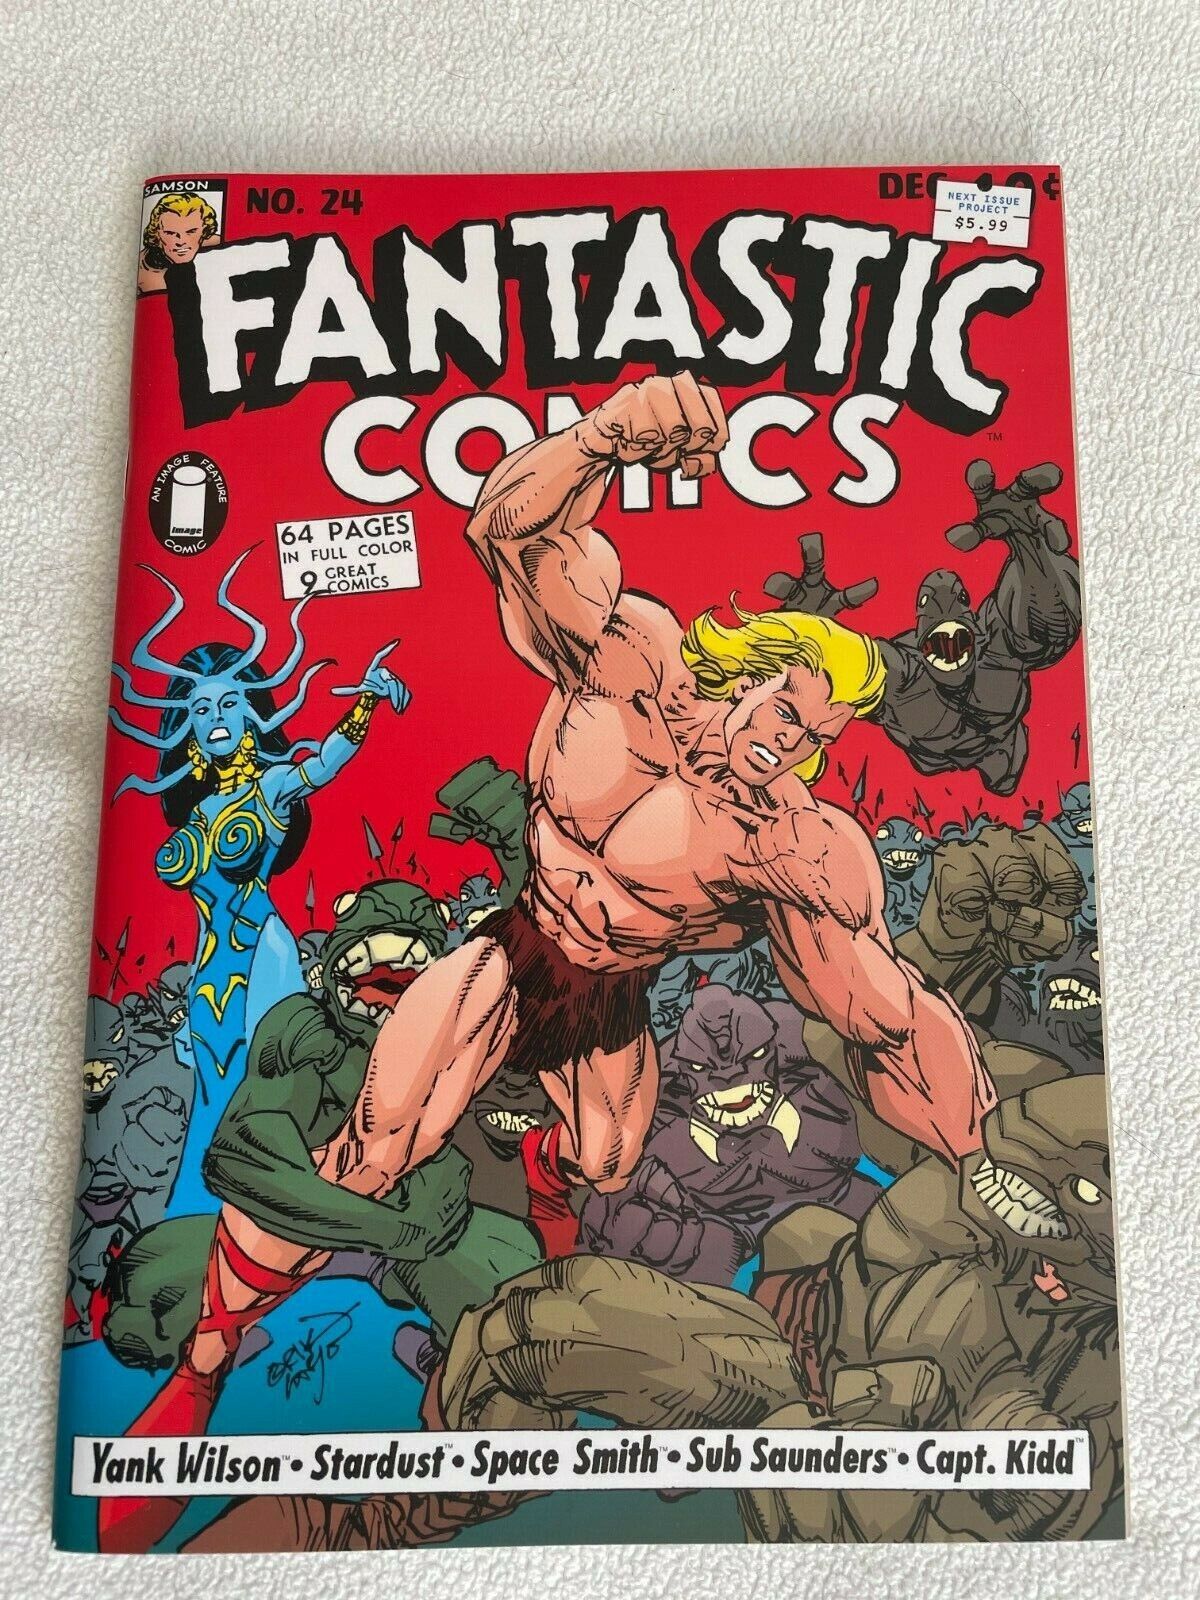 Fantastic Comics (Image, 2008) #24 VF